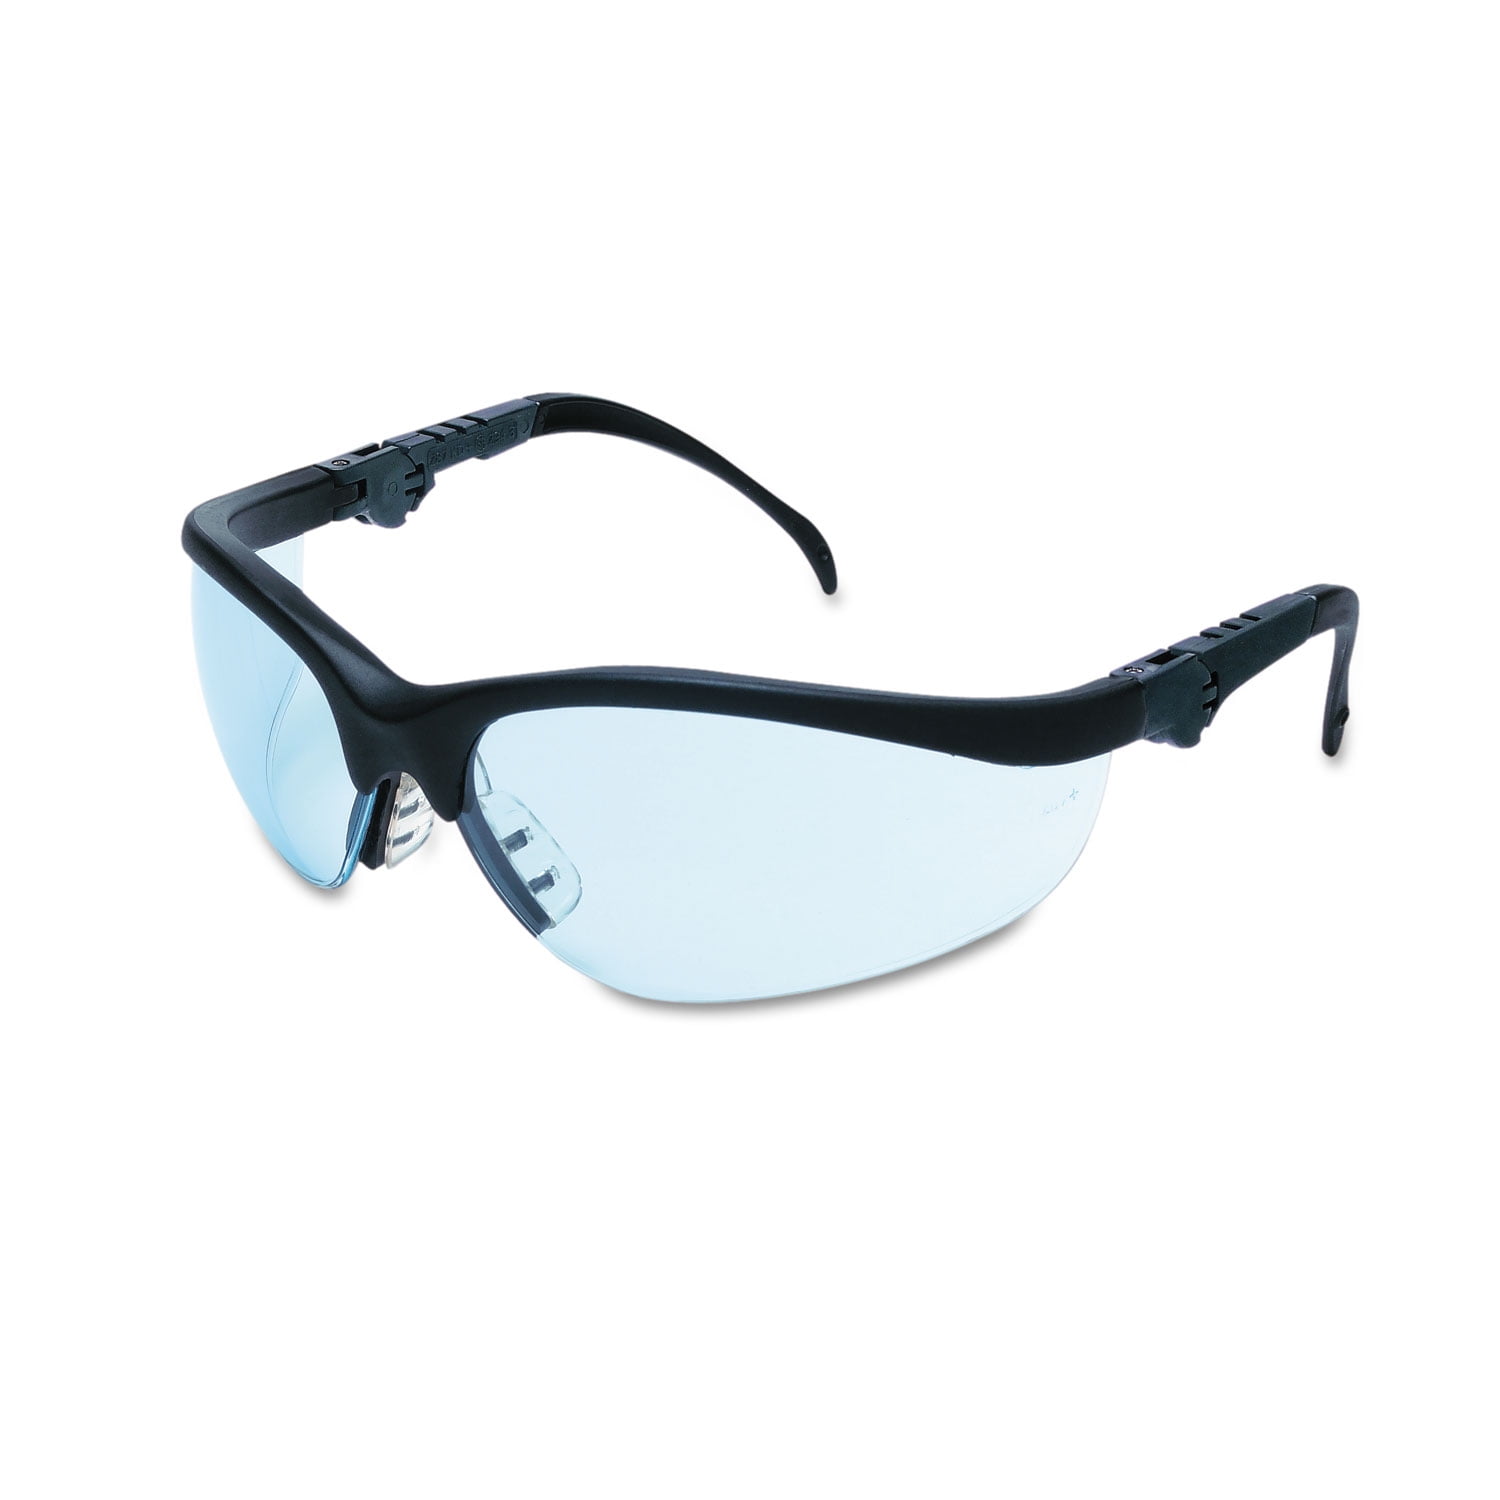 Mcr Safety Safety Glasses Light Blue Kd313